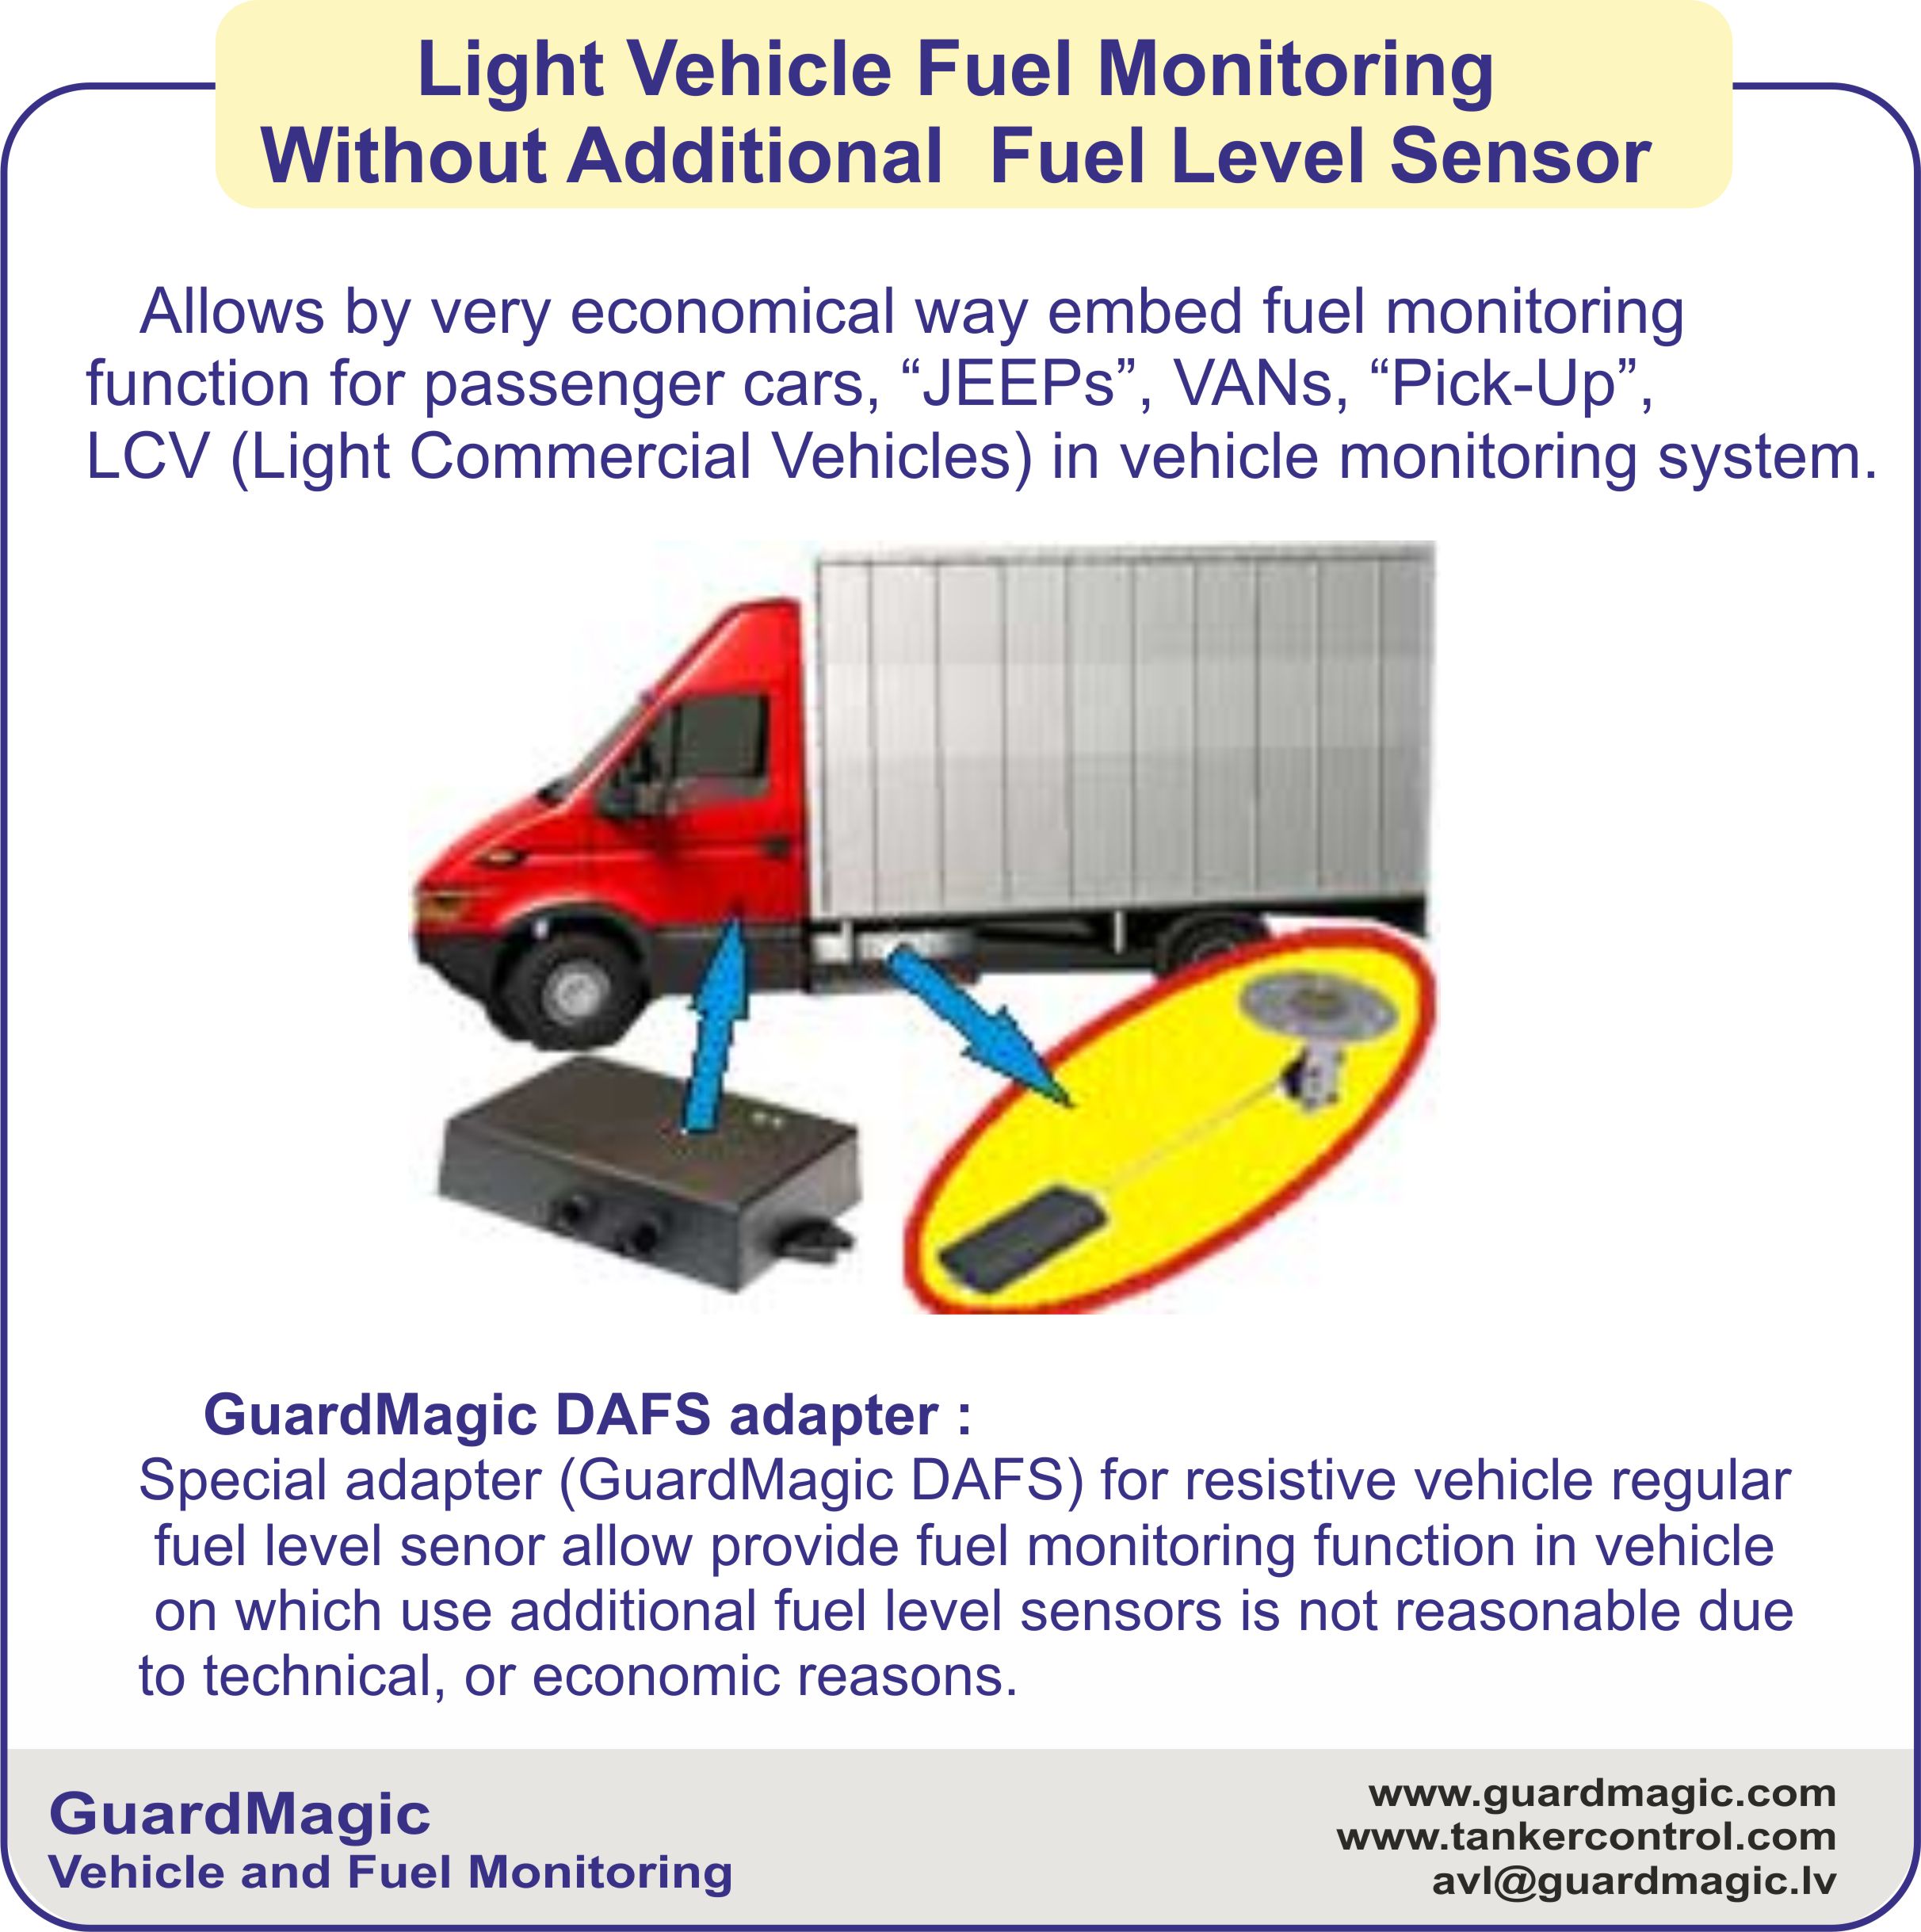 GuardMagic DAFS2-m3, - Adapter for vehicled fuel level sensor